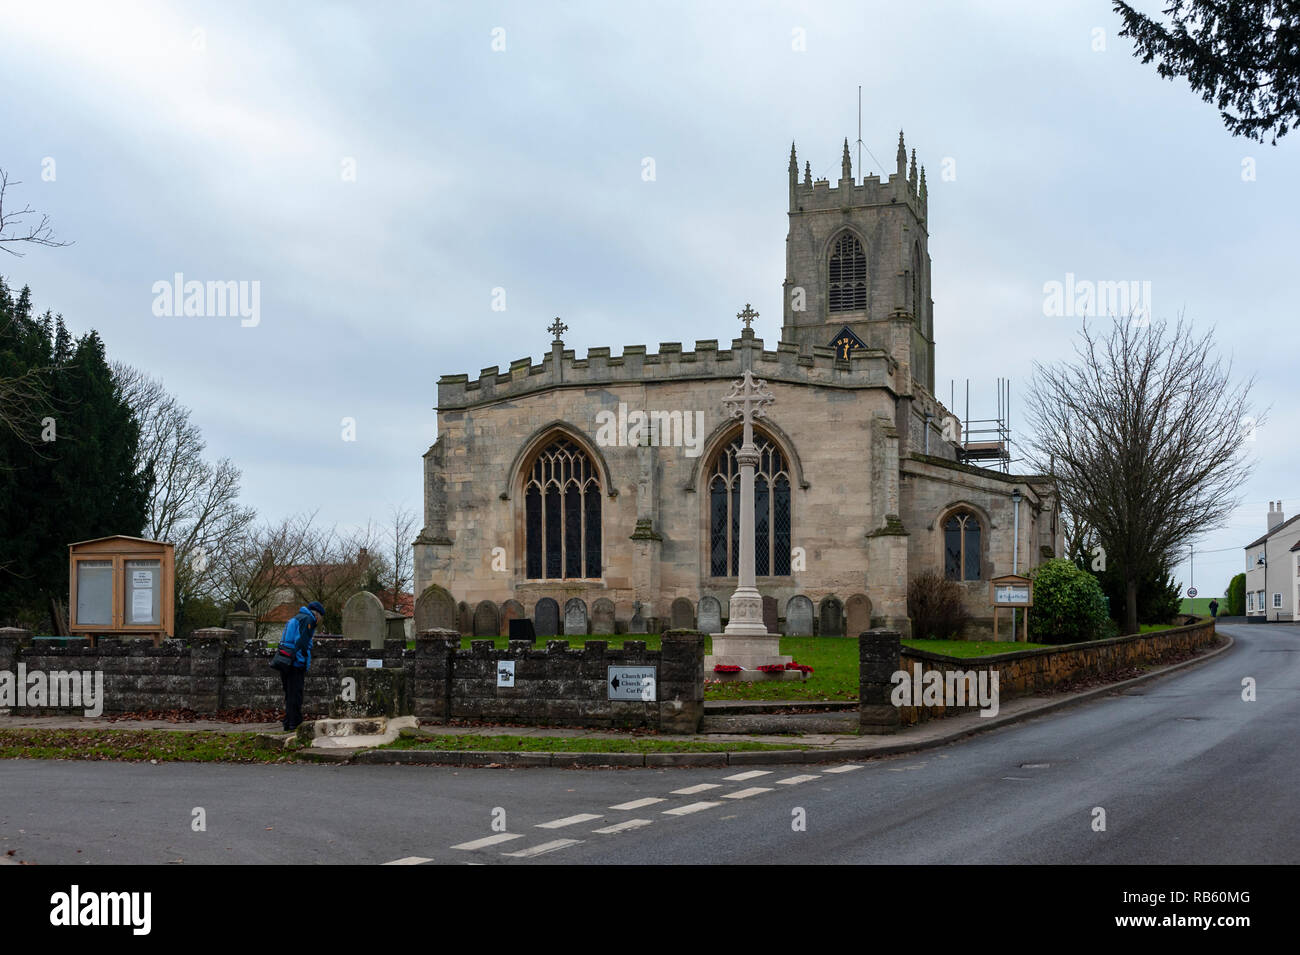 Haxey, Lincolnshire, England, UK - Das Dorf Pfarrkirche des Heiligen Nikolaus der Anblick der traditionellen alten Tradition Der haxey Haube seit dem 14. Jahrhundert. Stockfoto